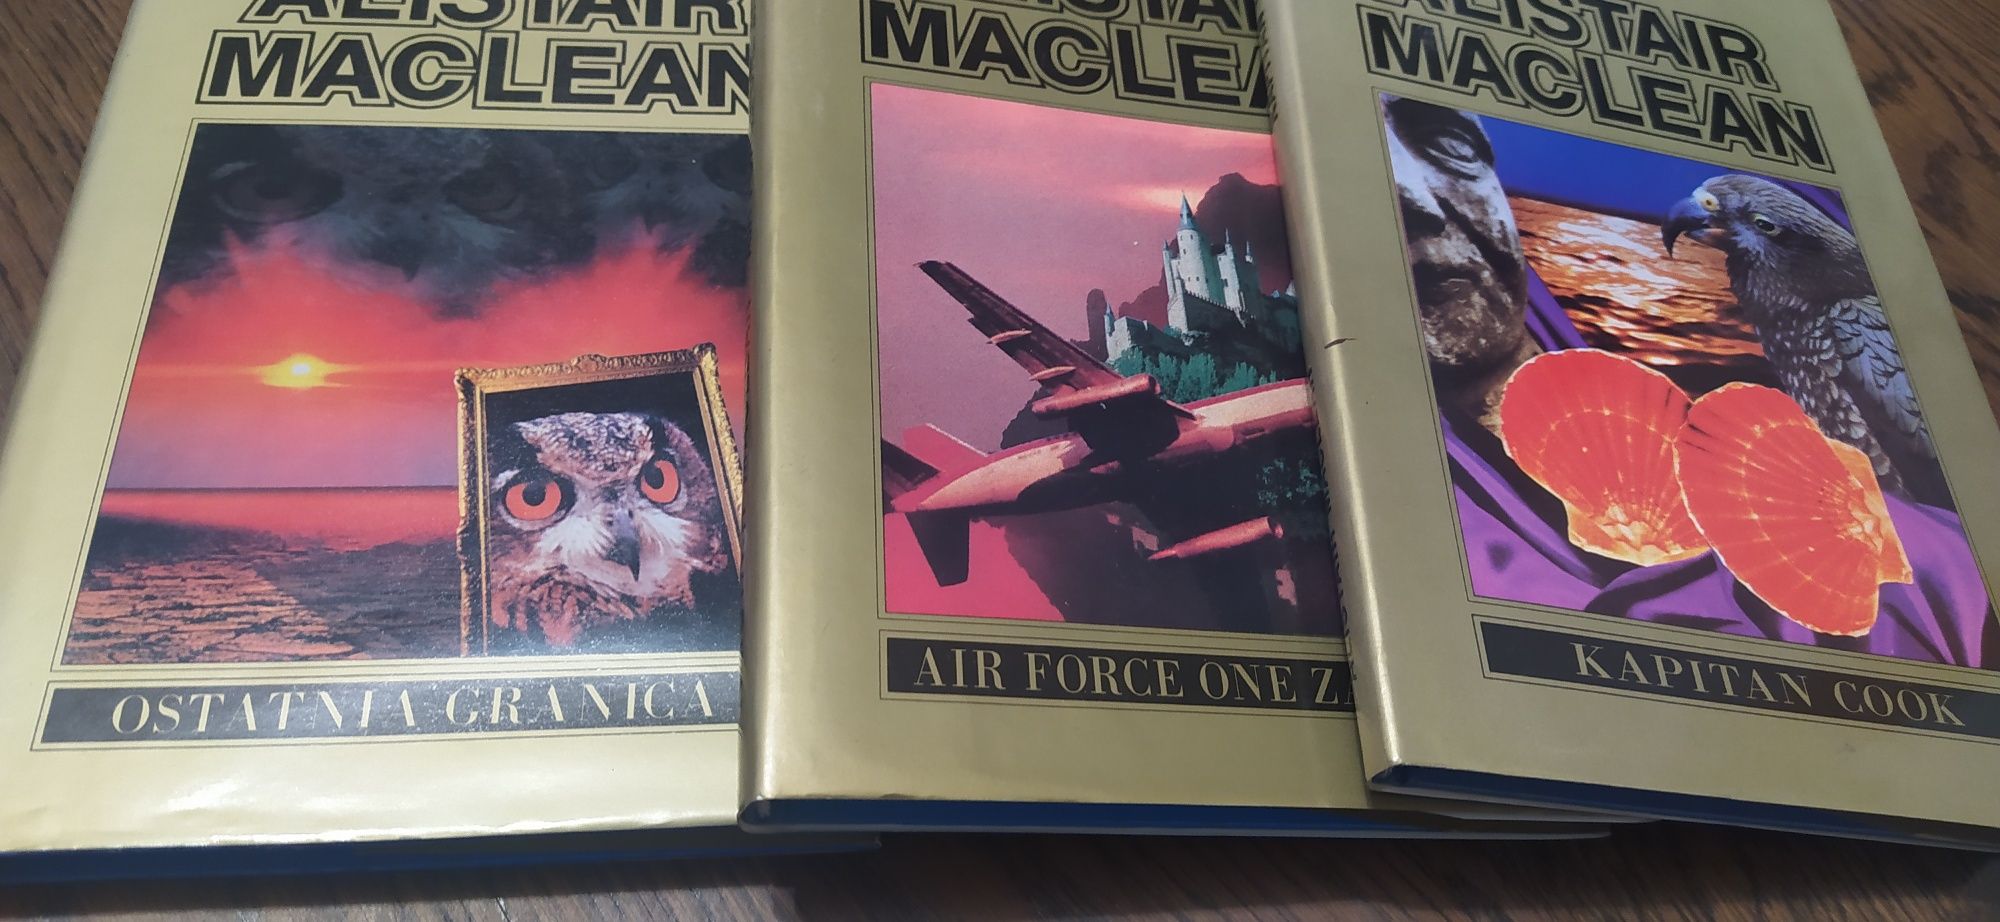 Alistair Maclean zestaw 3 książek!